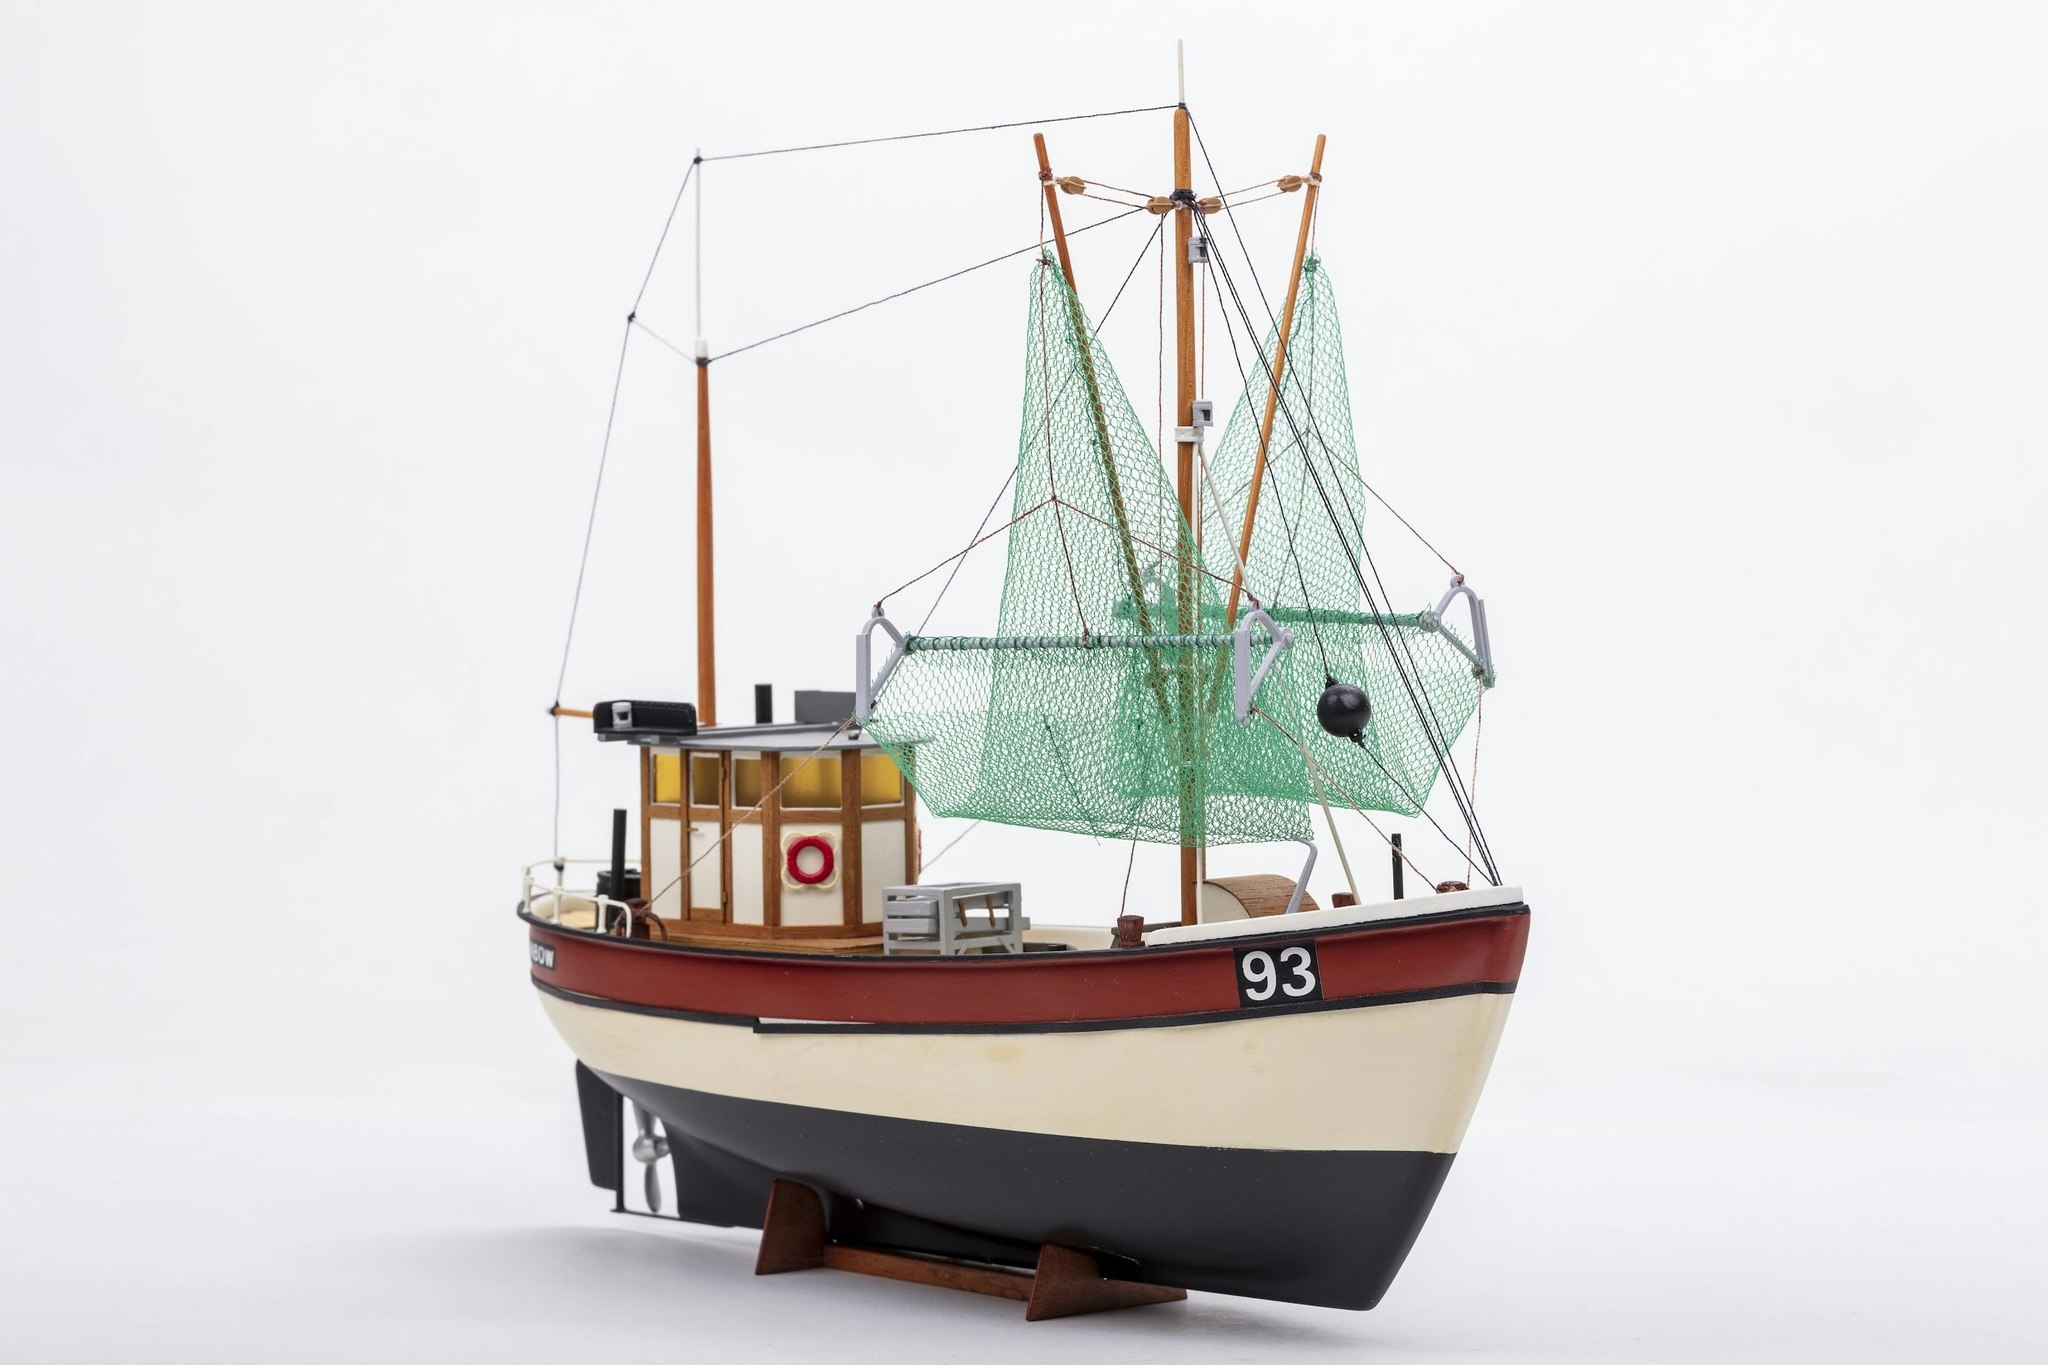 Skala 1/30 Byggmodell av Rainbow 201, Fiskebåt - från Billing Boats